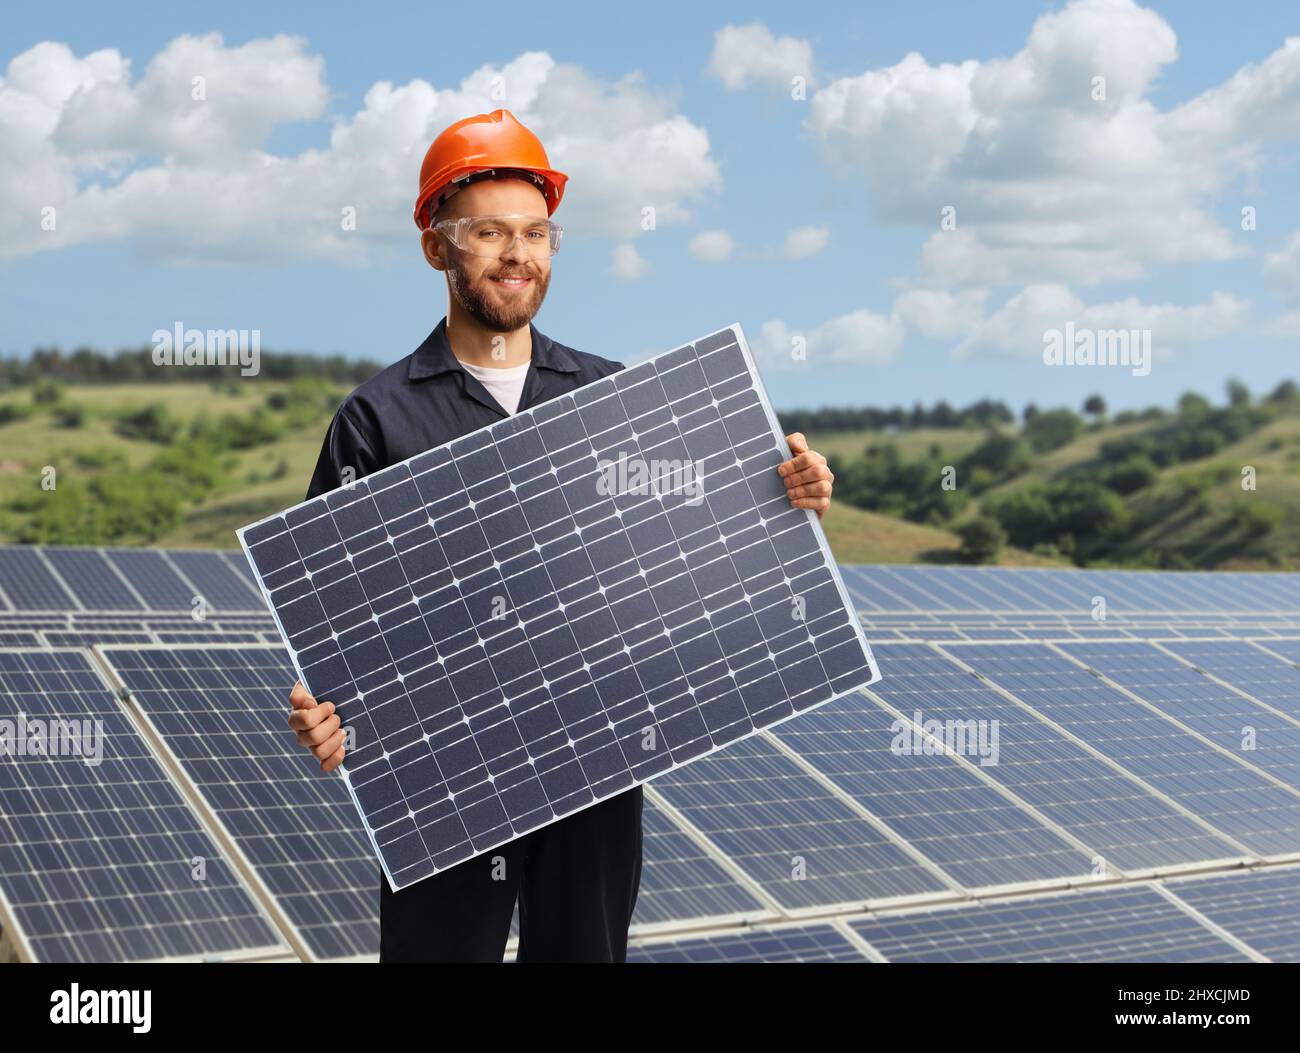 Lavoratore in un unibody che tiene un modulo fotovoltaico a celle solari su una fattoria solare Foto Stock